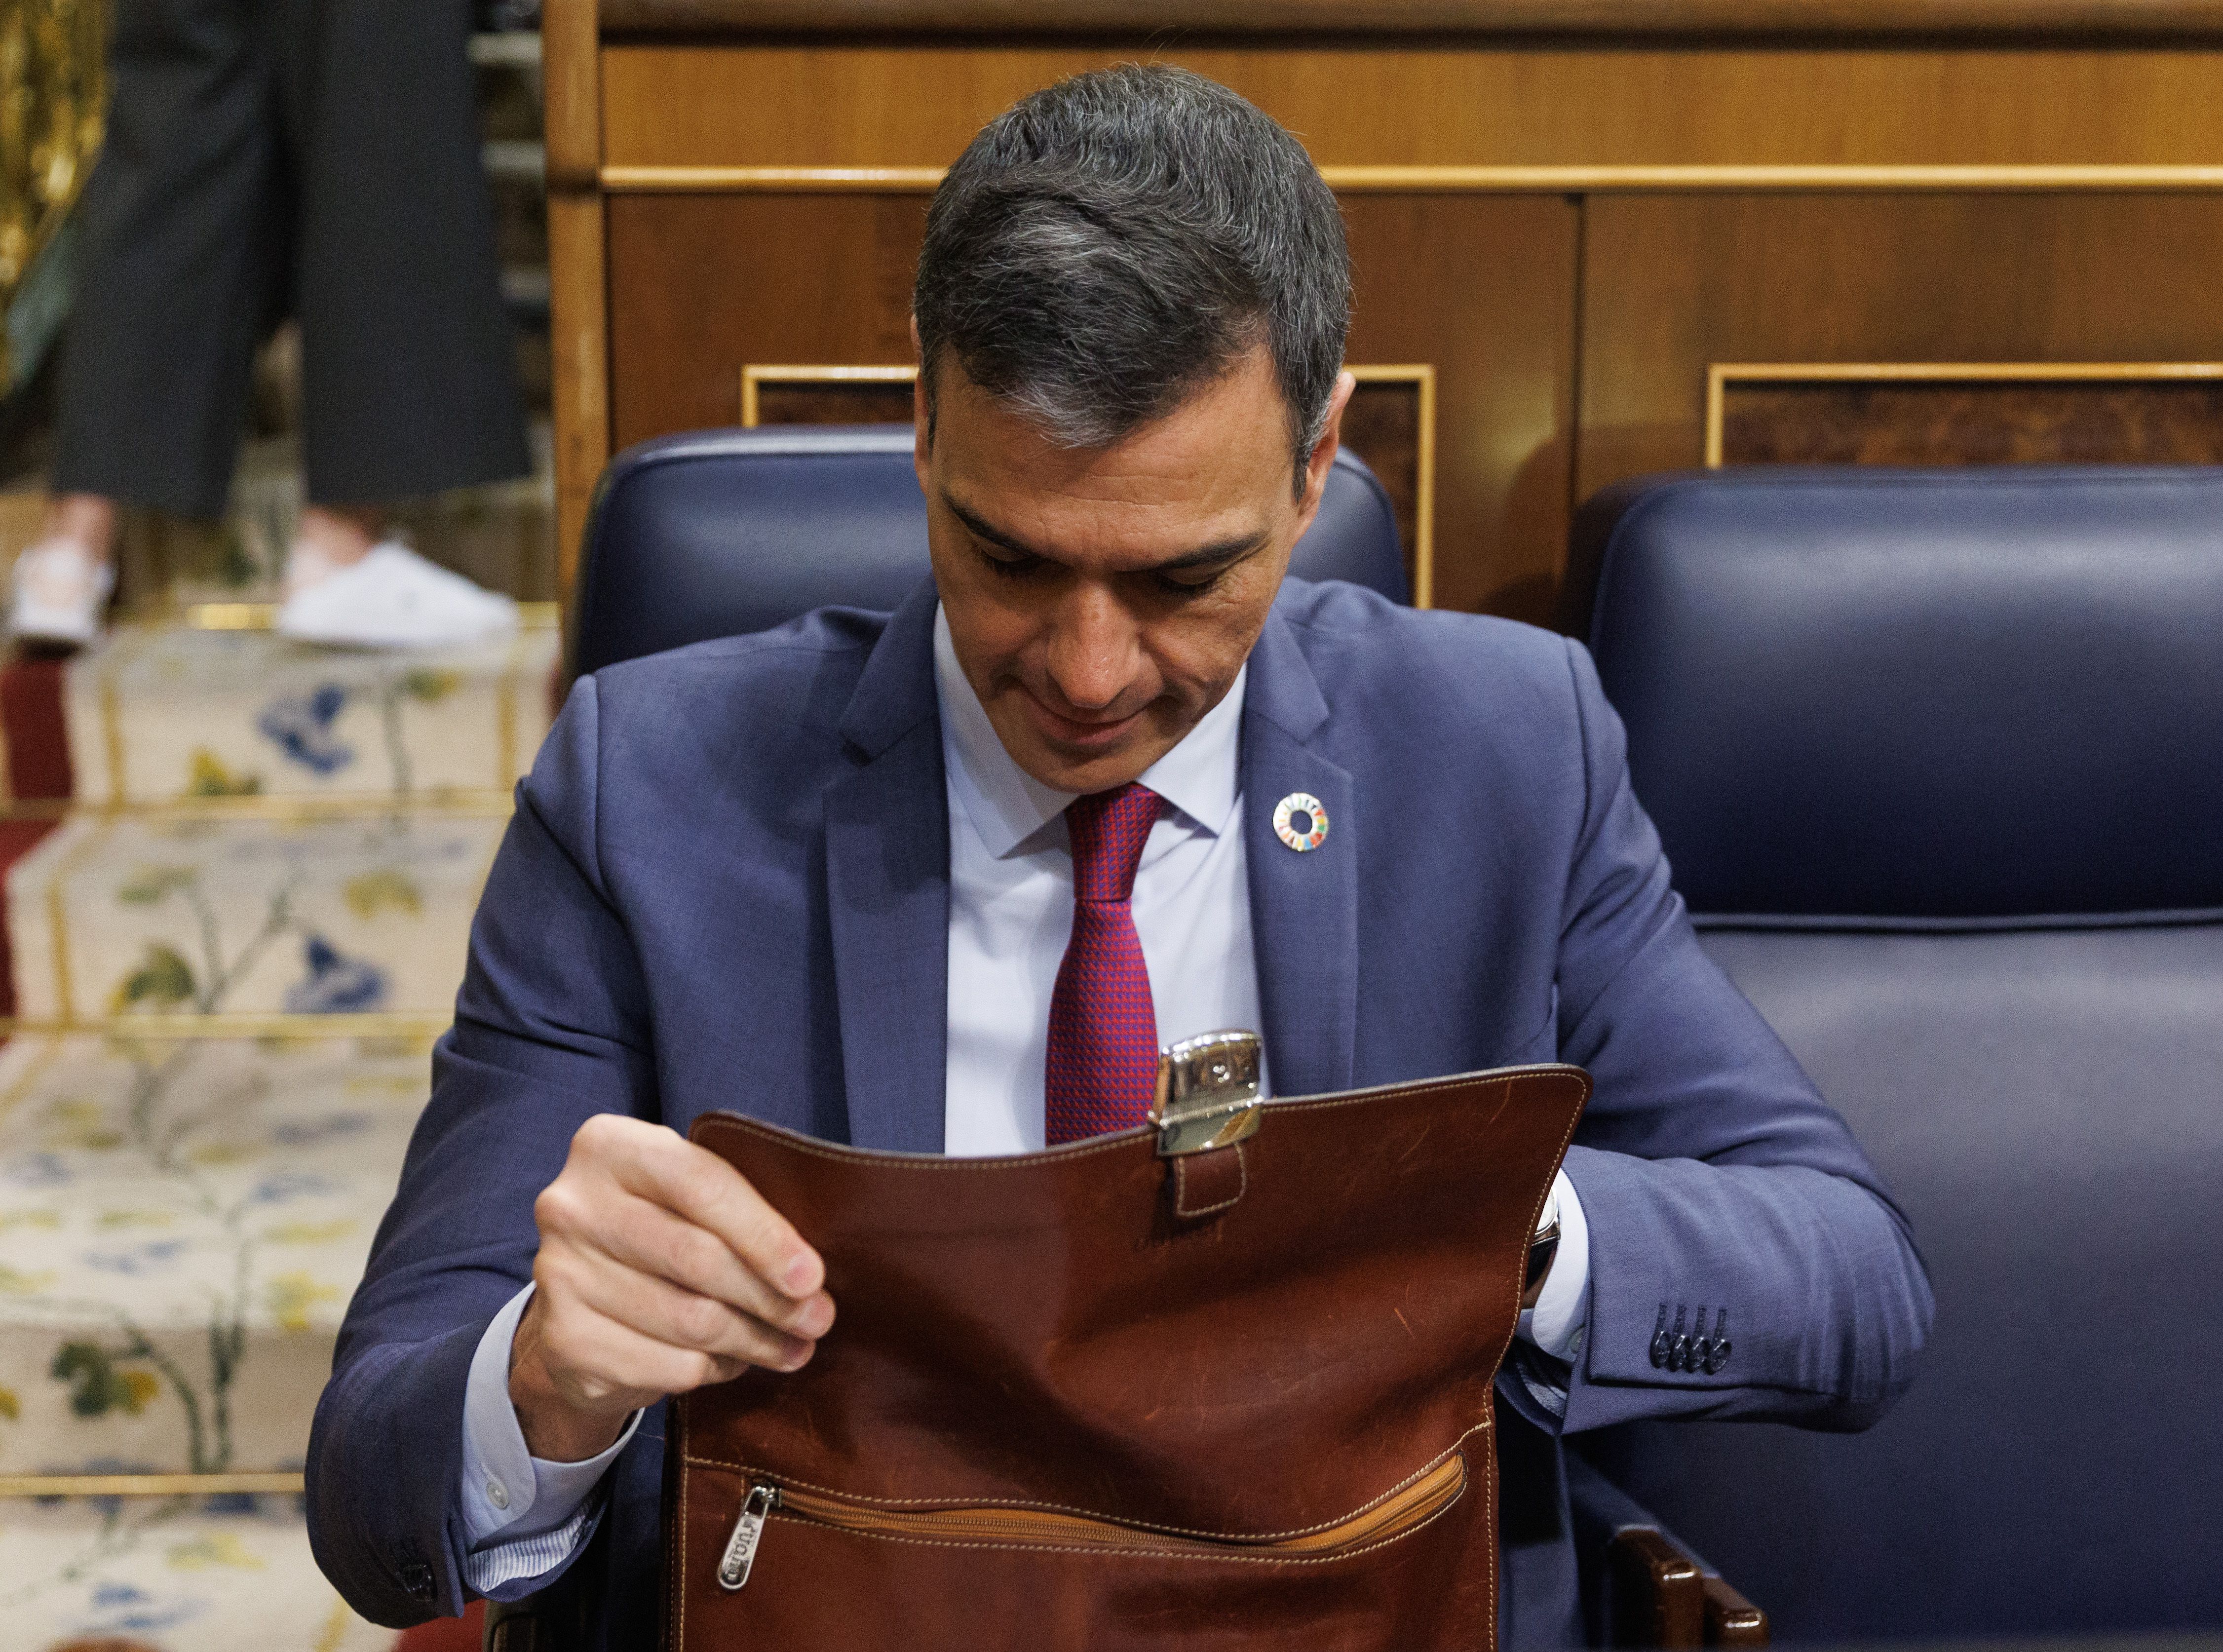 Balance legislatura de Sánchez: "Salvo en pensiones, este Gobierno no ha puesto foco en los sénior"